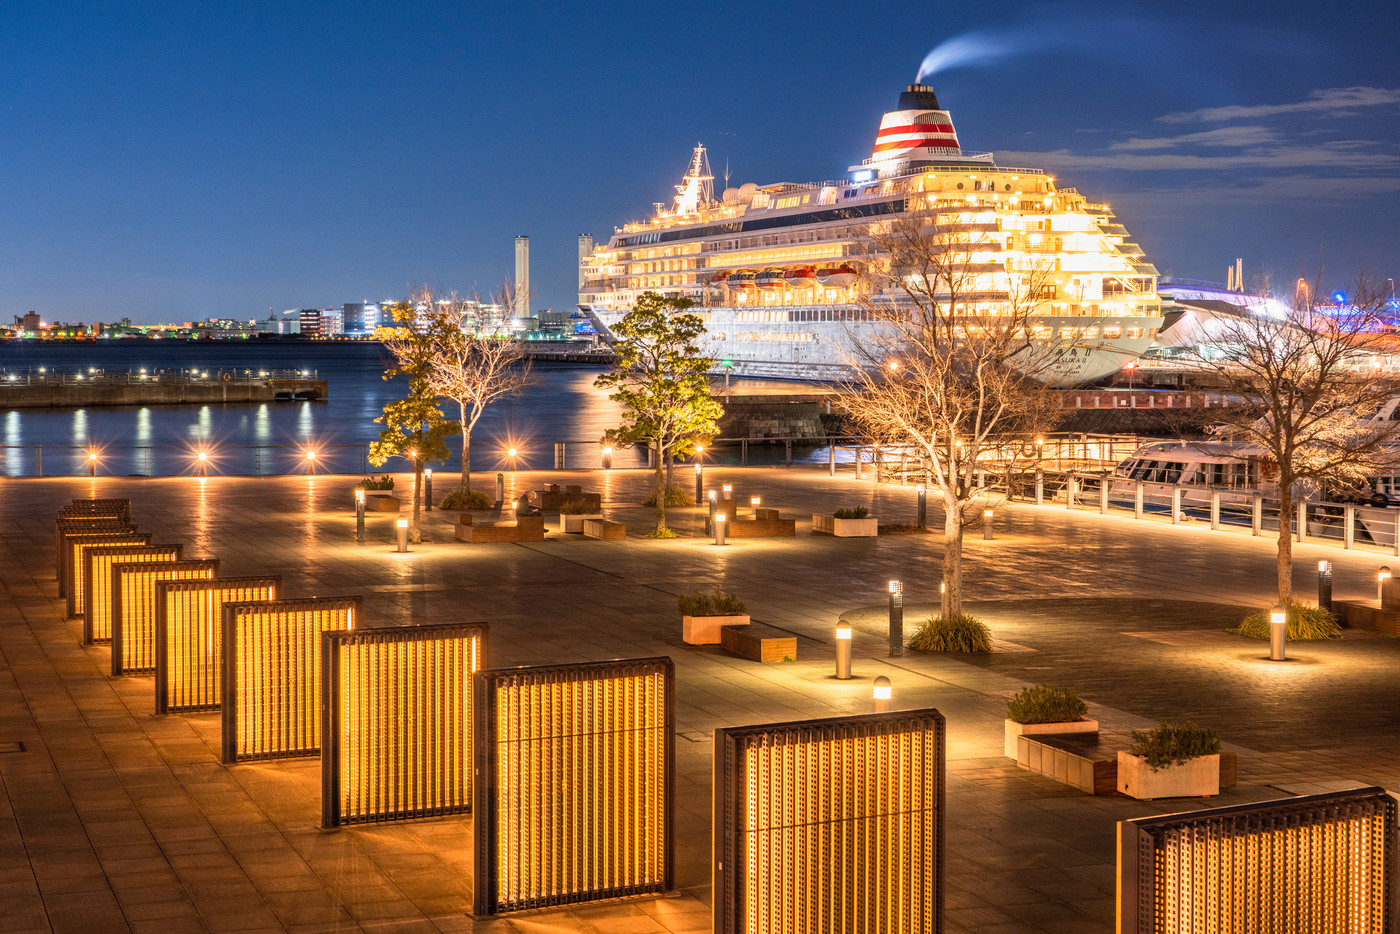 《神奈川県》横浜港町の夜景・象の鼻パークと豪華客船